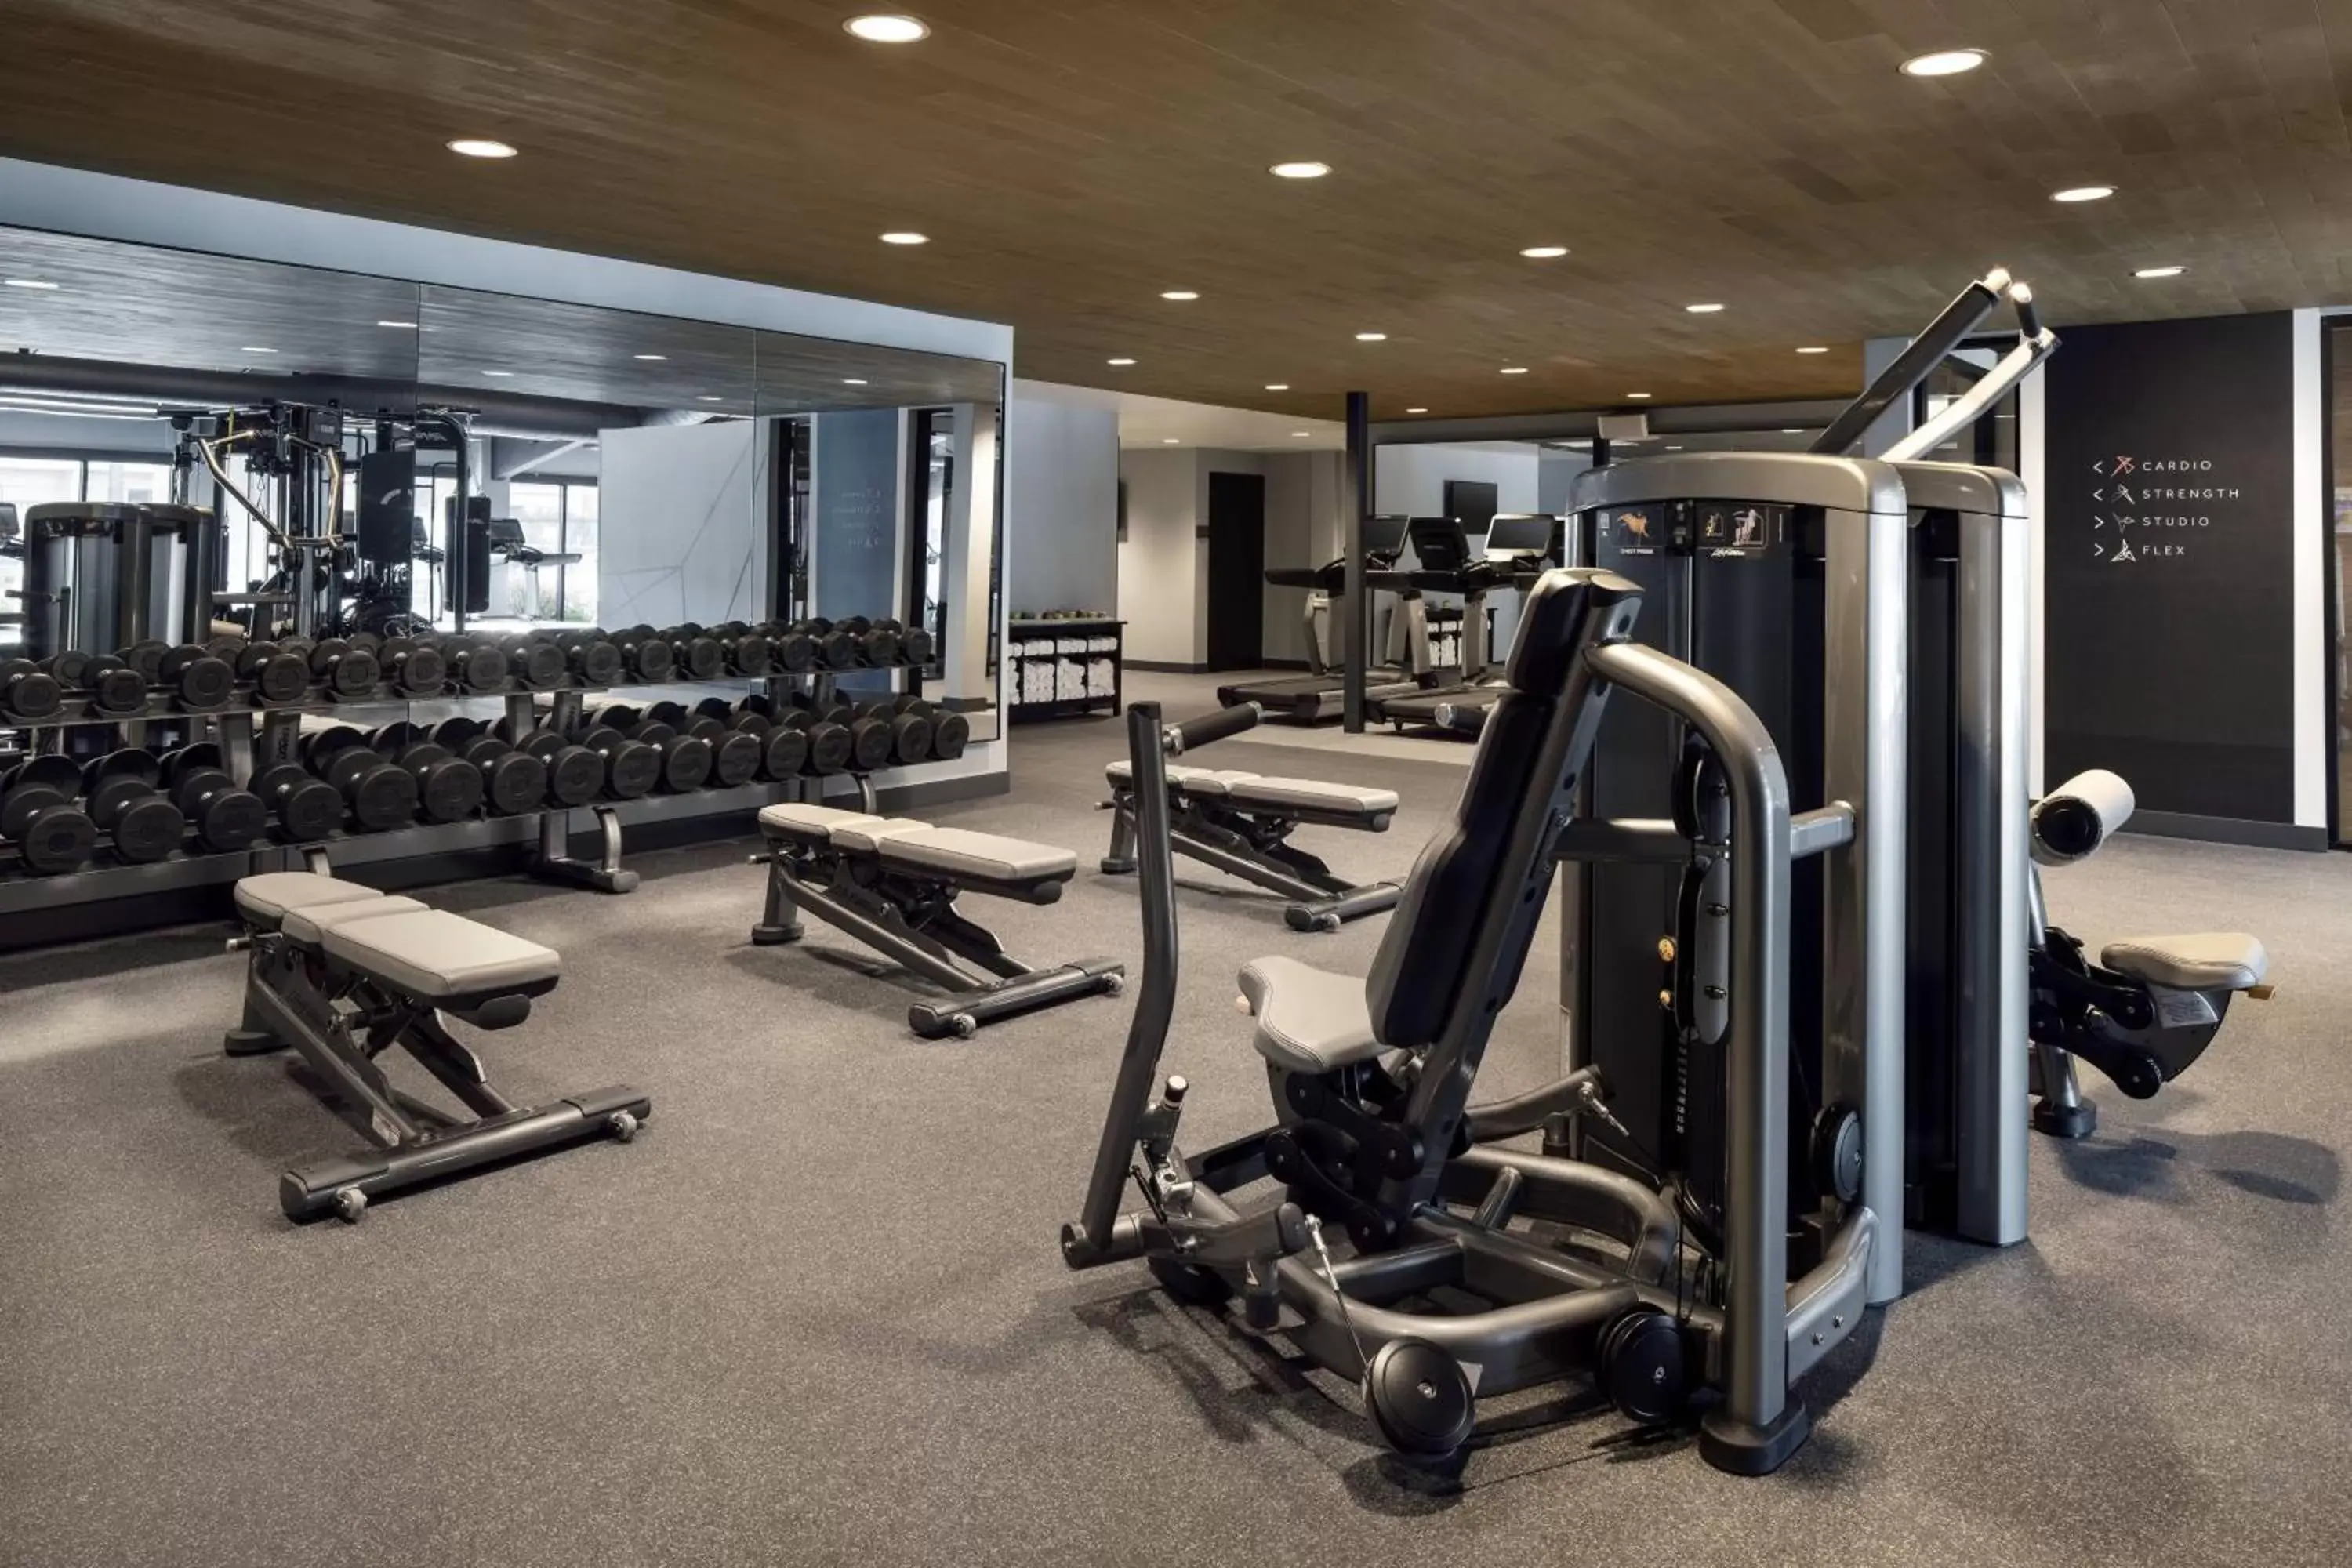 Fitness centre/facilities, Fitness Center/Facilities in Santa Clara Marriott